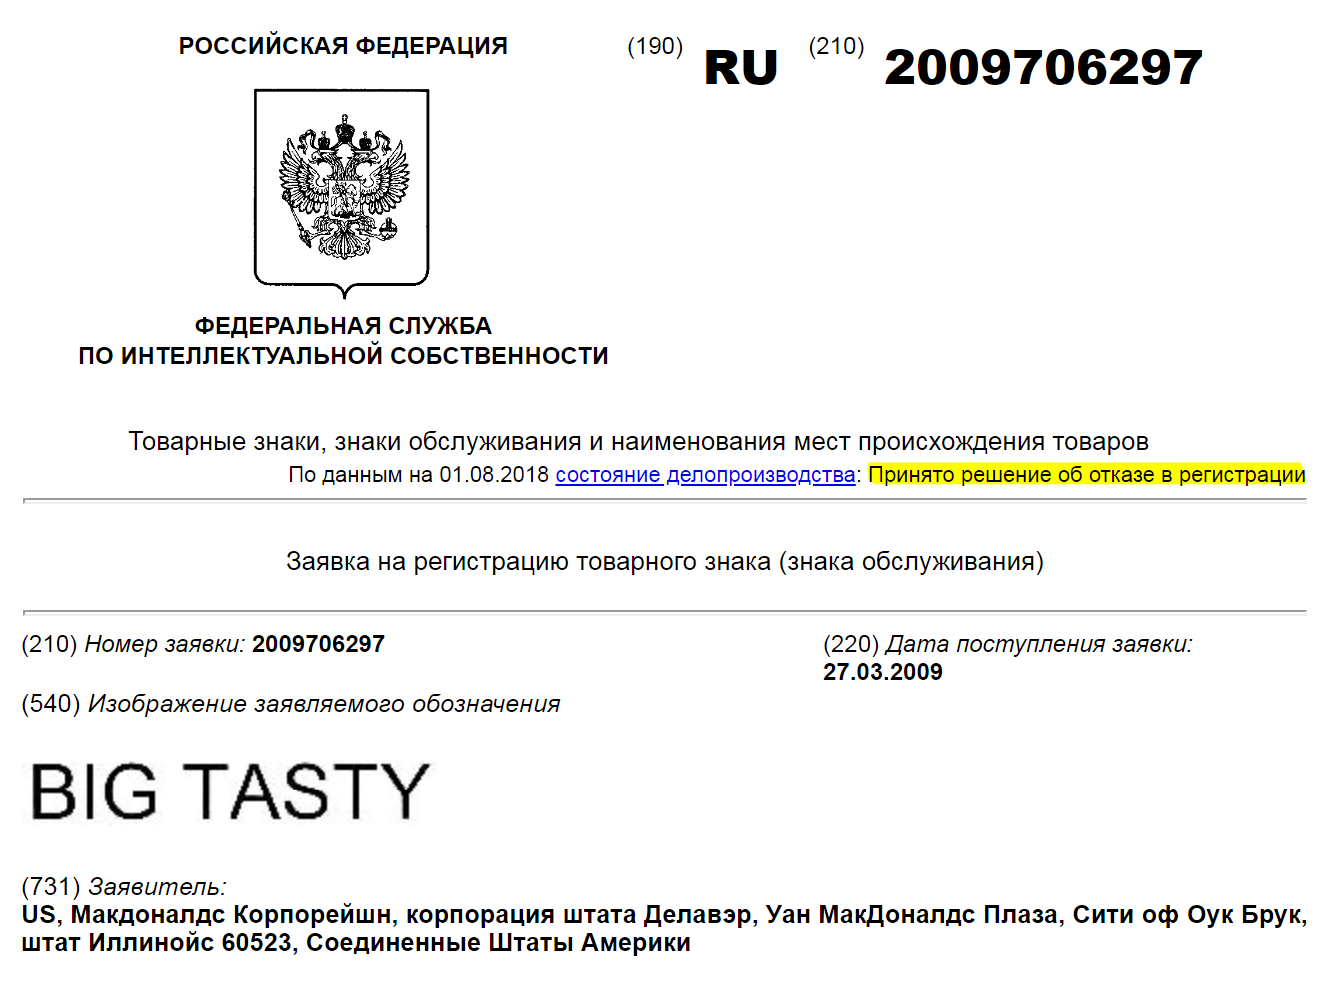 «Макдональдсу» отказали в регистрации описательного названия «Большой вкусный»